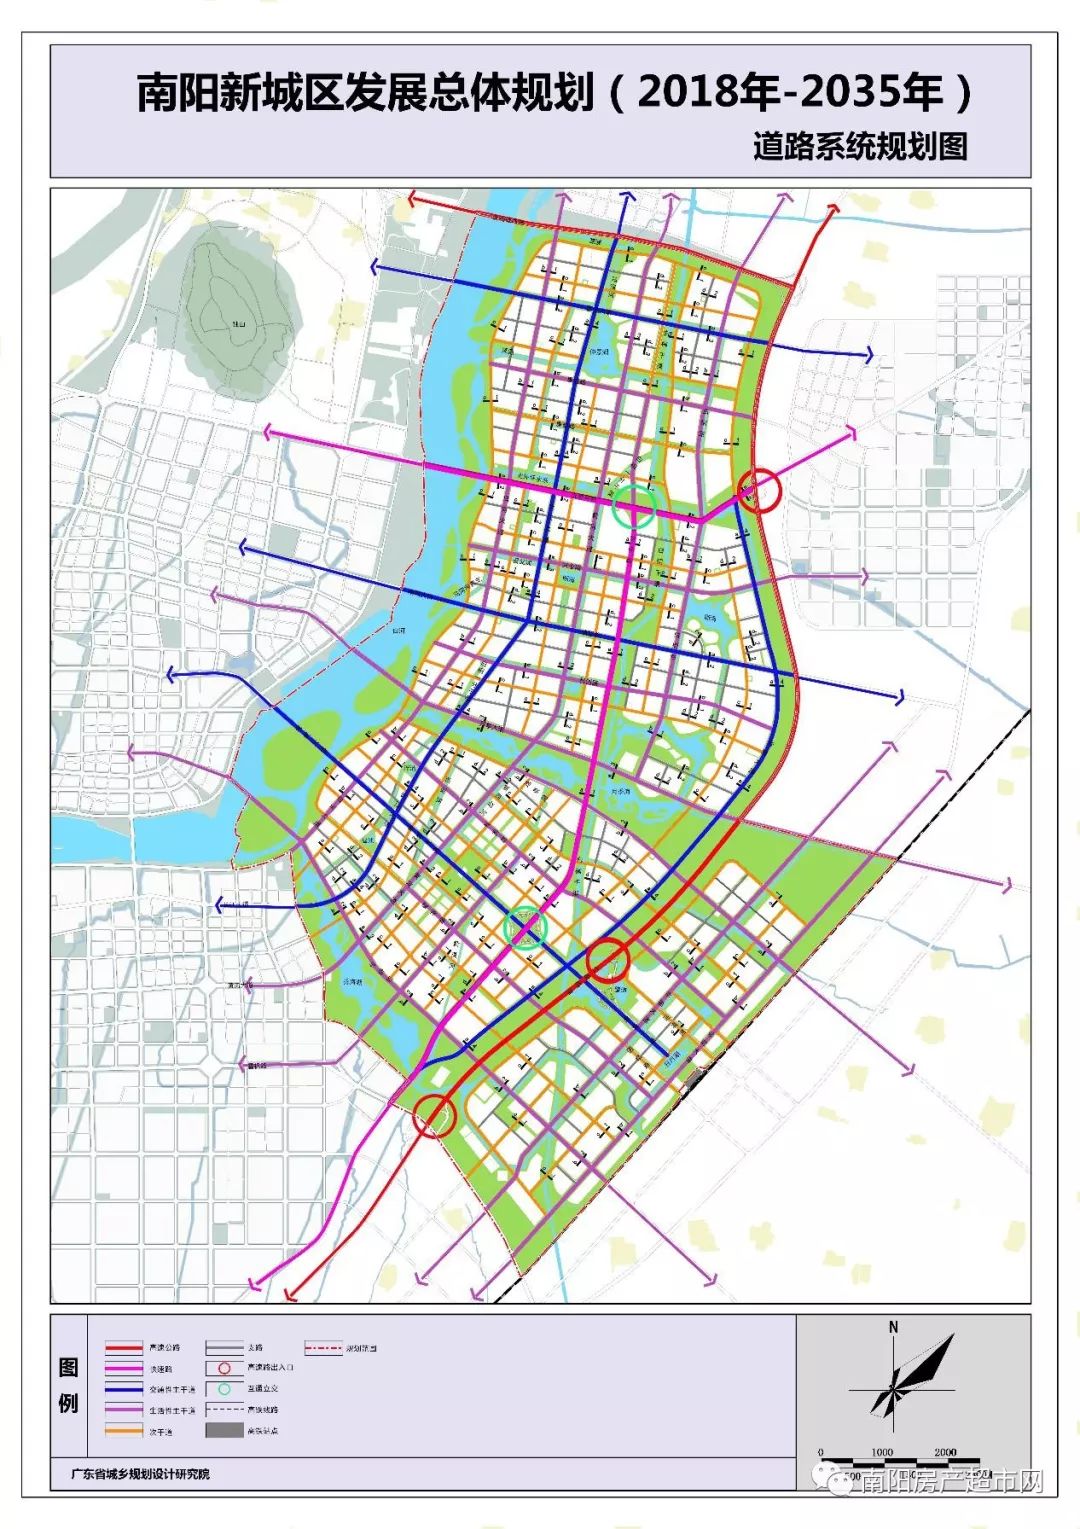 【城事】南阳市城市总体规划(2018-2035年)公示文件